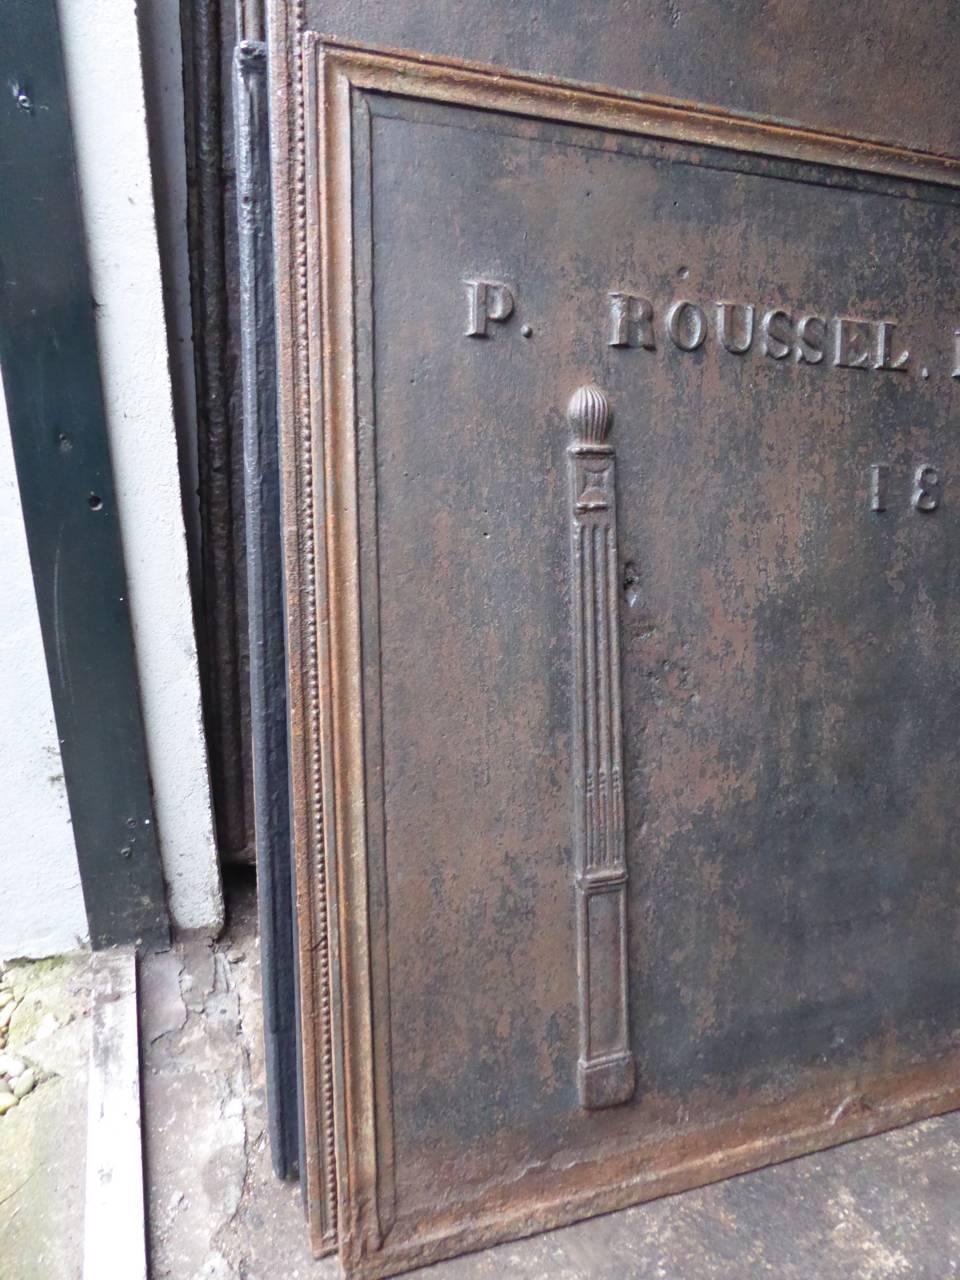 Plaque de cheminée française avec les piliers de la liberté, un nom et la date de production 1851.

Ce produit pèse plus de 65 kg / 143 lbs. Tous nos produits qui pèsent 66 kg / 146 lbs ou plus sont expédiés en tant que fret standard de porte à